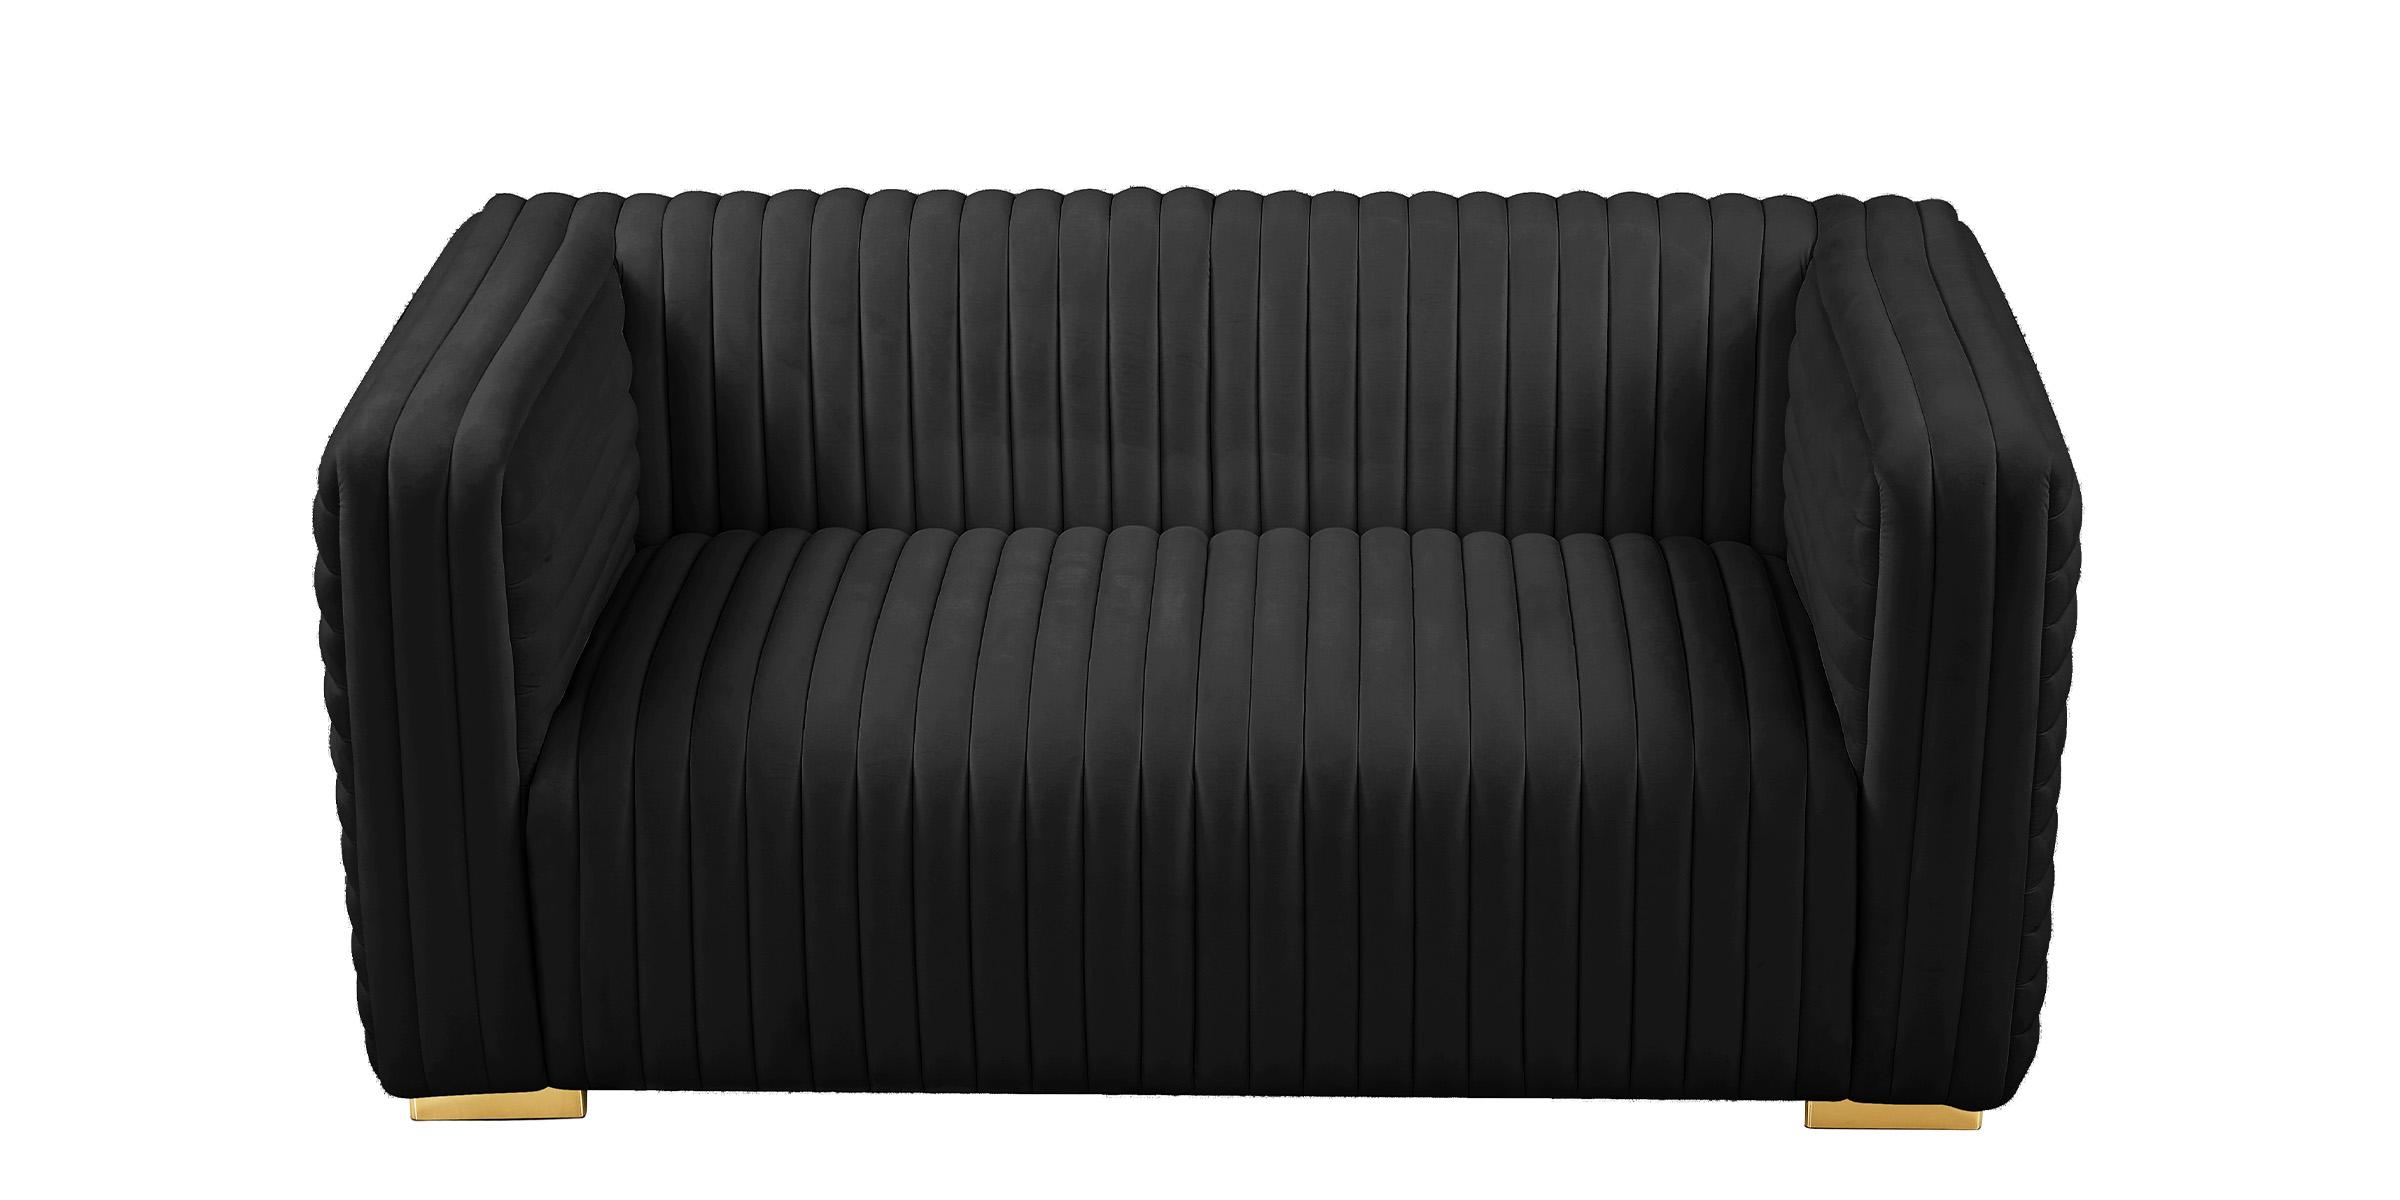 

    
Glam BLACK Velvet Channel Tufted Sofa Set 3Pcs Ravish 640Black Meridian Modern
